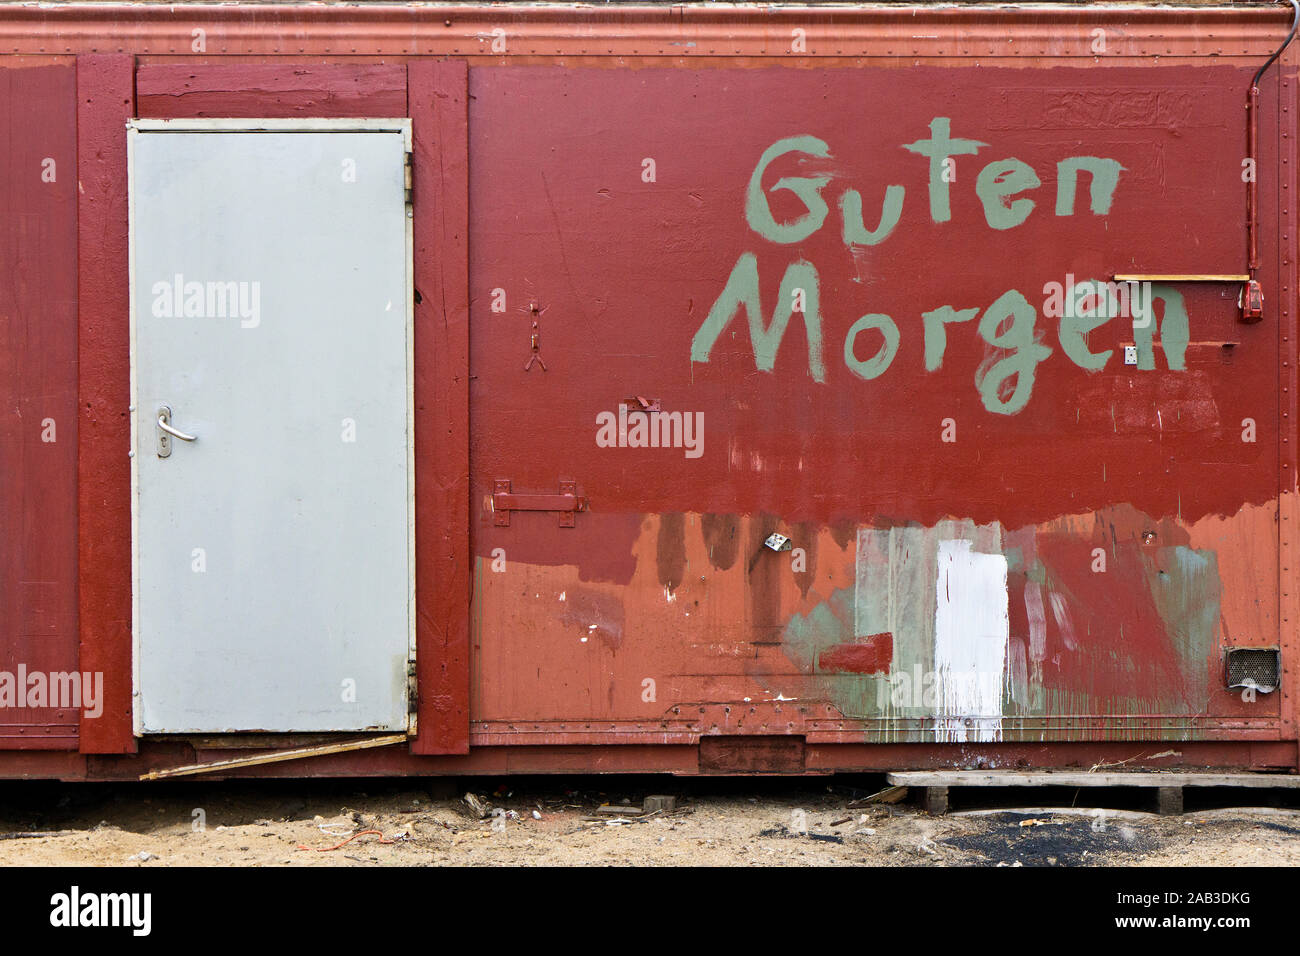 Die Vorderseite von einem alten Baucontainer mit der Aufschrift „Guten Morgen“. |The front of an old building container that says 'Good morning'.| Stock Photo